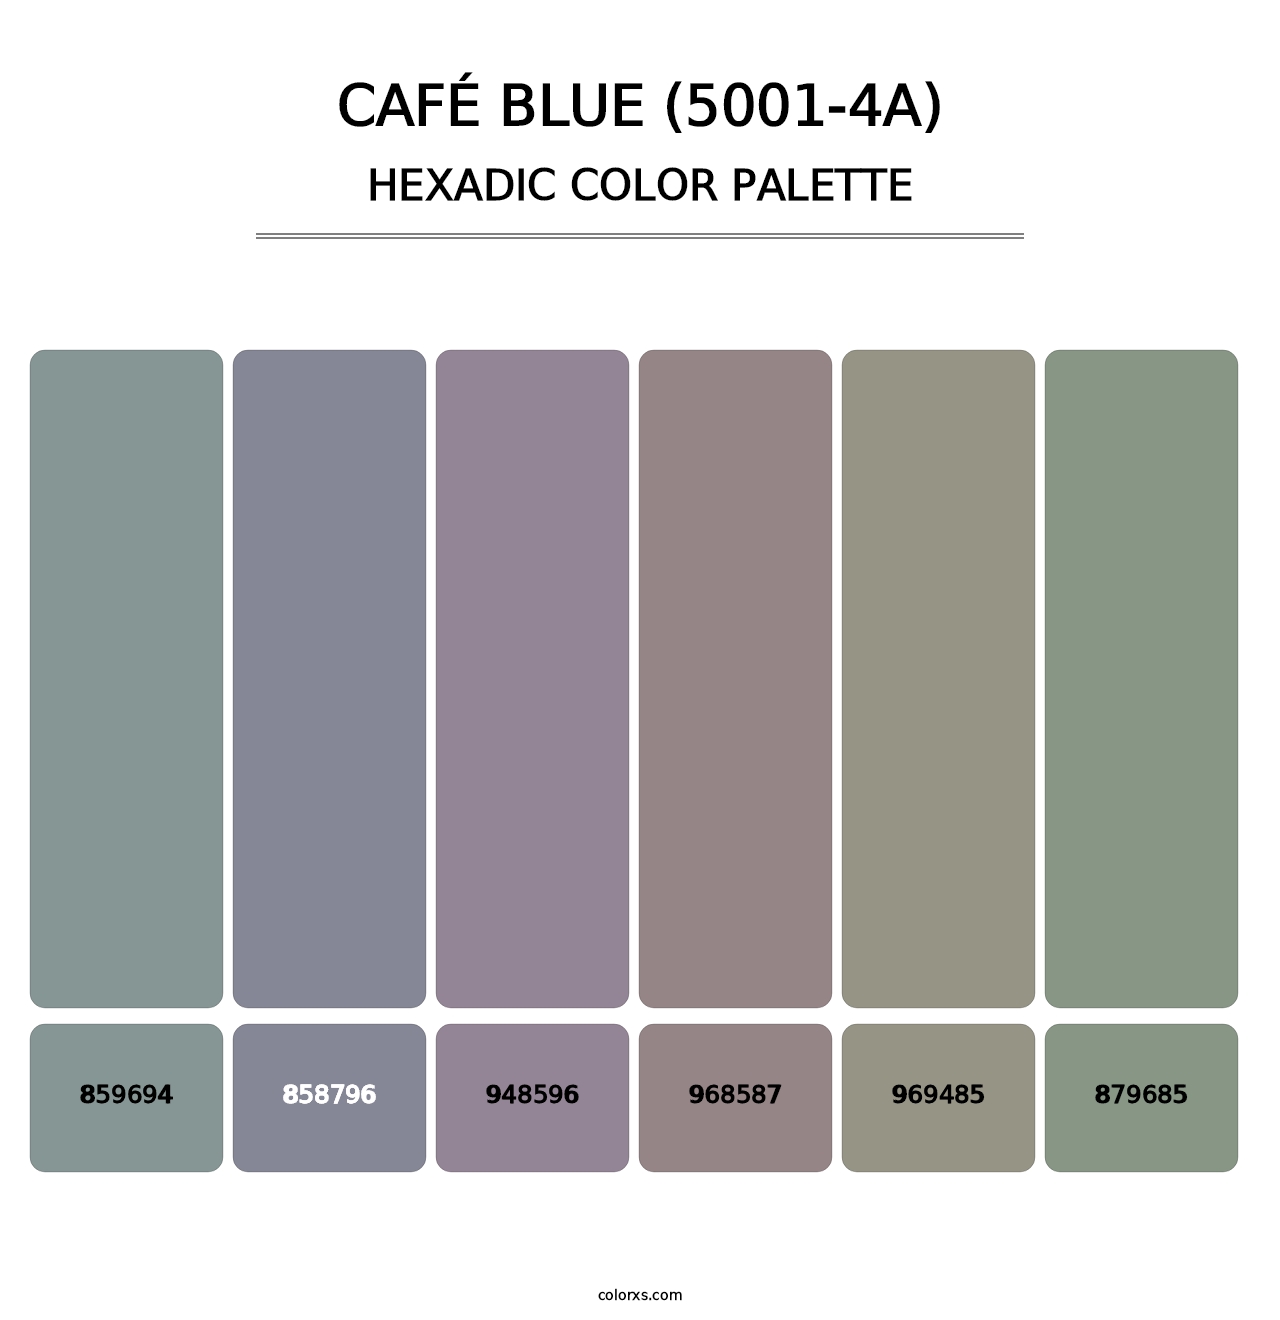 Café Blue (5001-4A) - Hexadic Color Palette